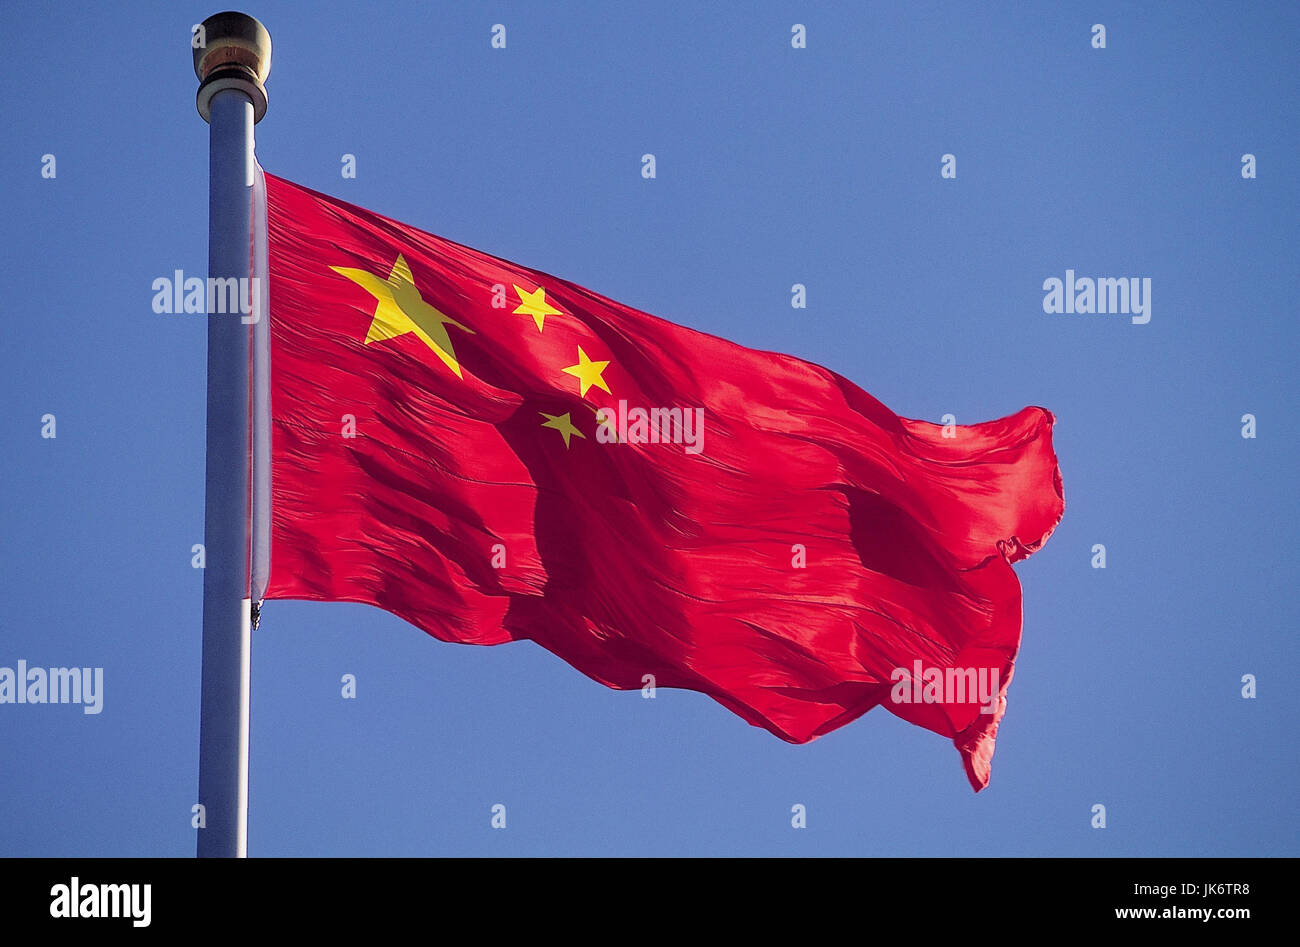 China, Peking, Flagge, Volksrepublik China   Beijing, Hauptstadt, Tian'amen, Platz des Himmlischen Friedens, Fahne, chinesisch, rot,, außen Stock Photo